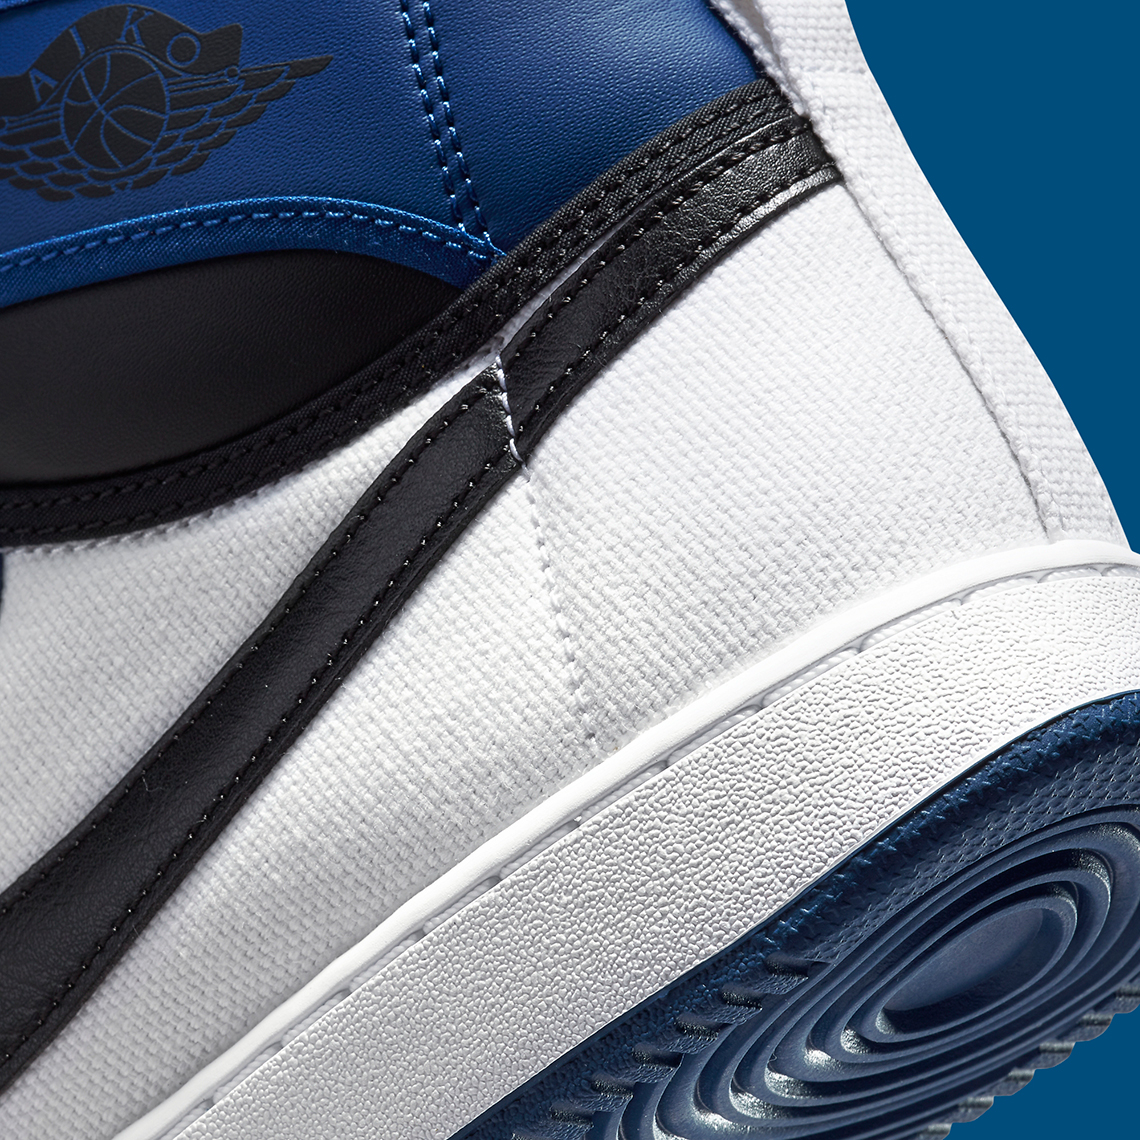 Air Jordan 1 KO Storm Blue DO5047-401 | SneakerNews.com